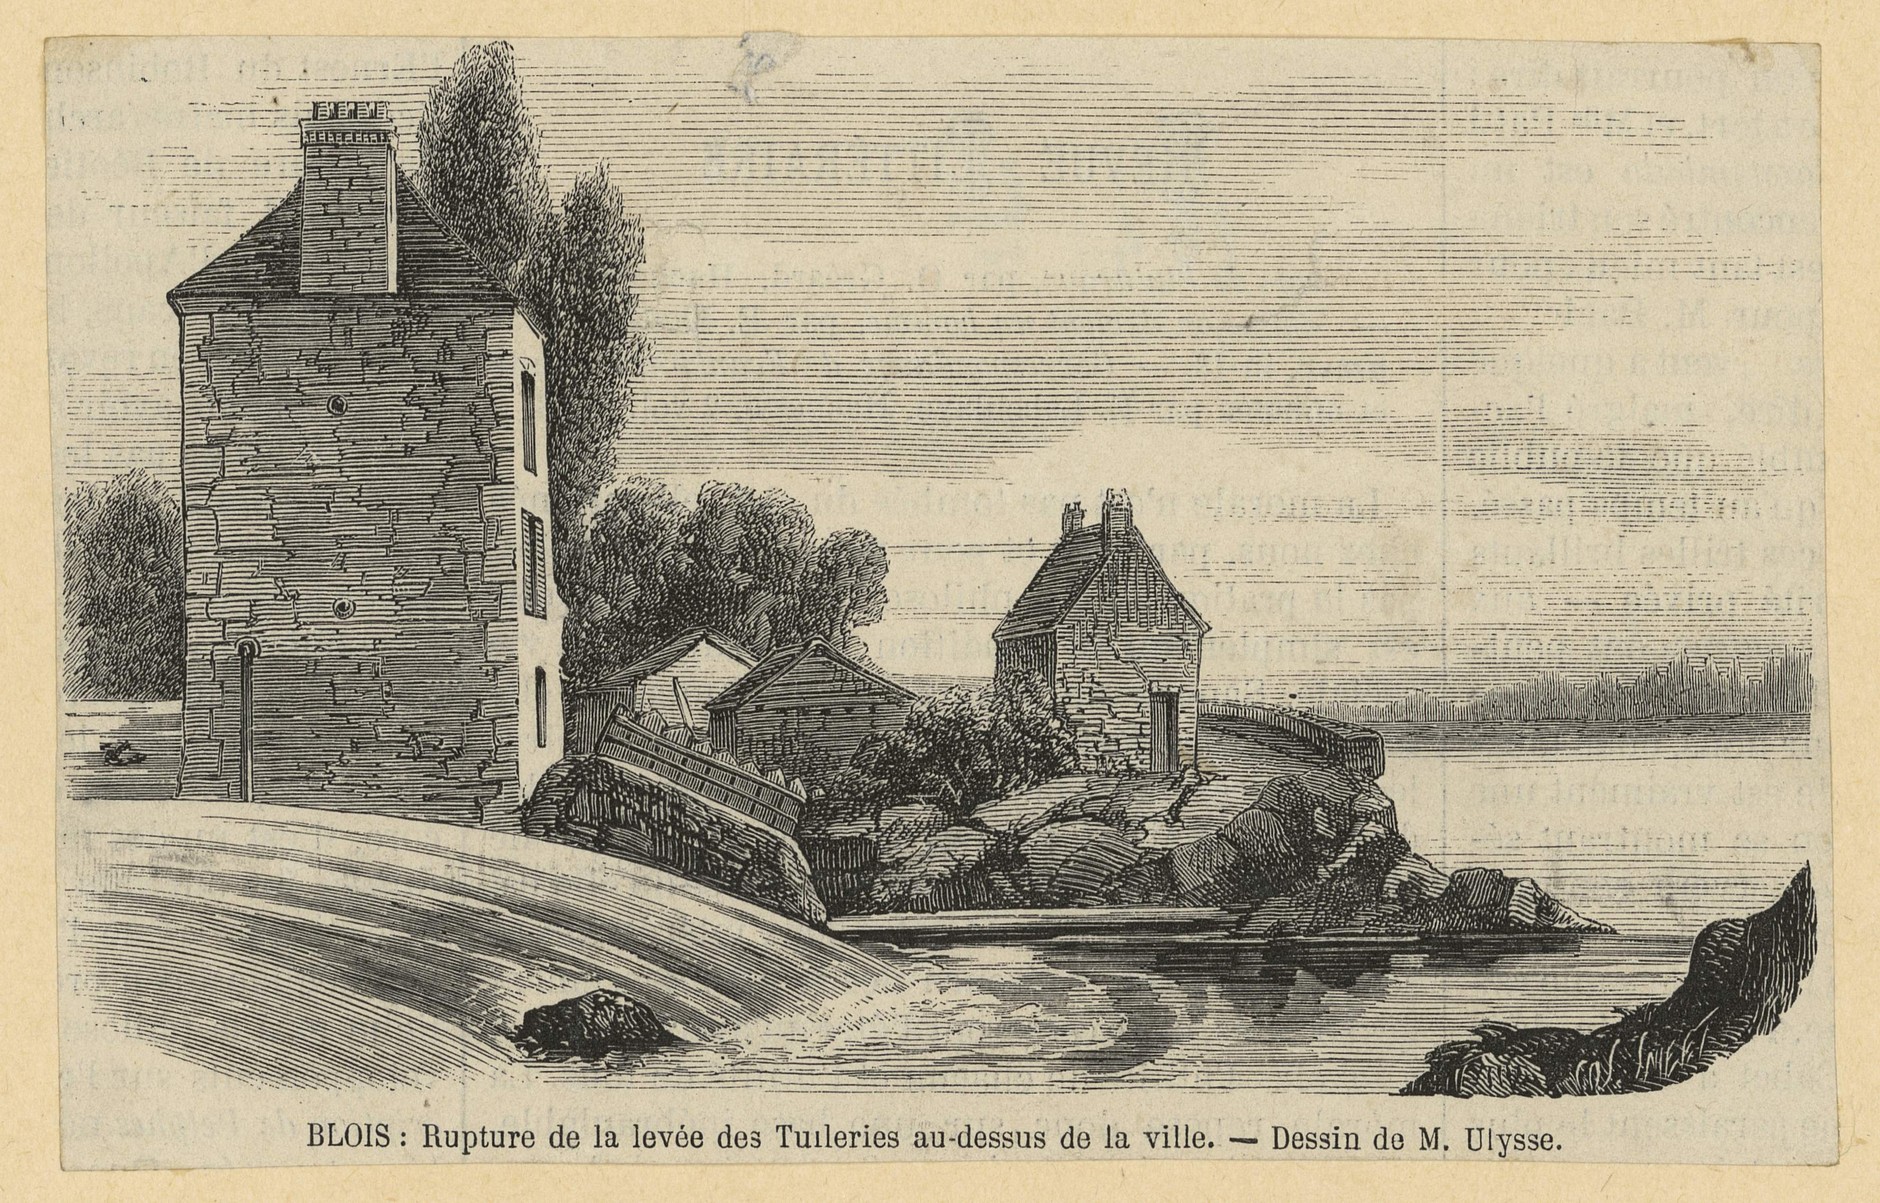 Blois, Rupture de la levée des Tuileries durant la crue de juin 1856, gravure d'après le dessin d'Ulysse Besnard